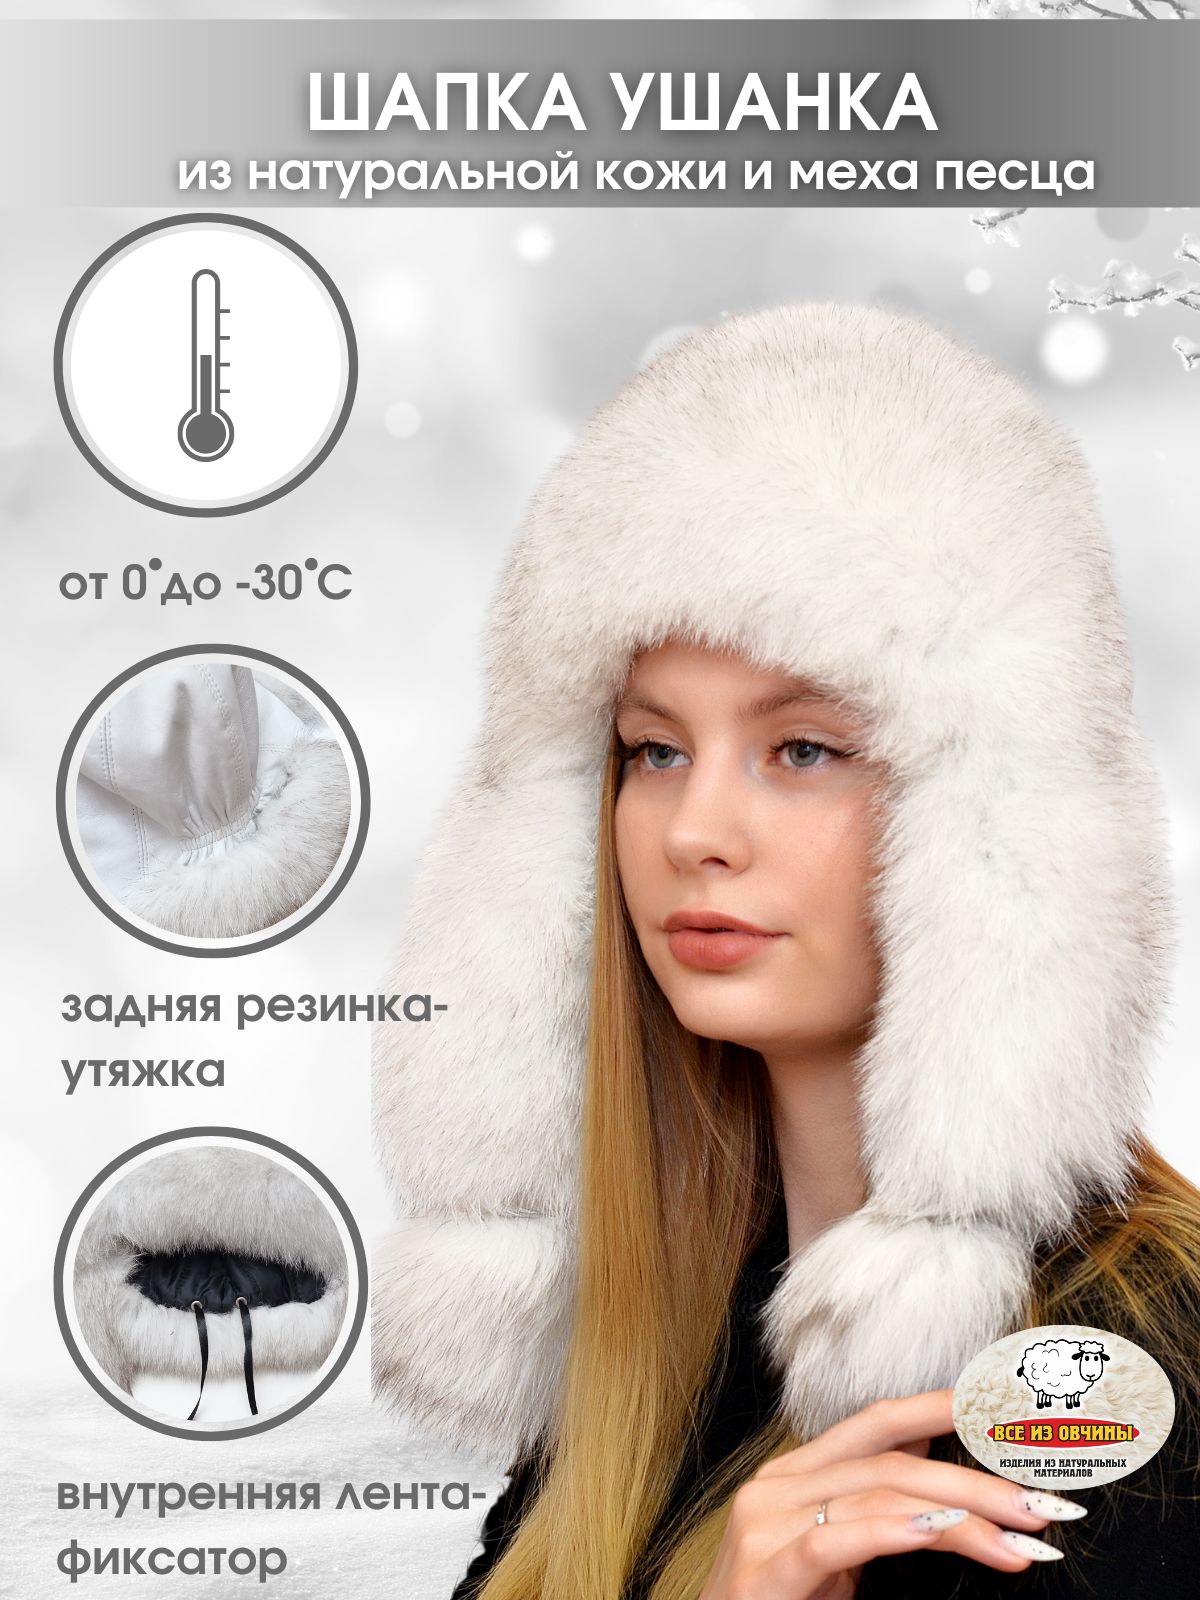 Купить зимние меховые шапки из натурального меха - Интернет магазин 